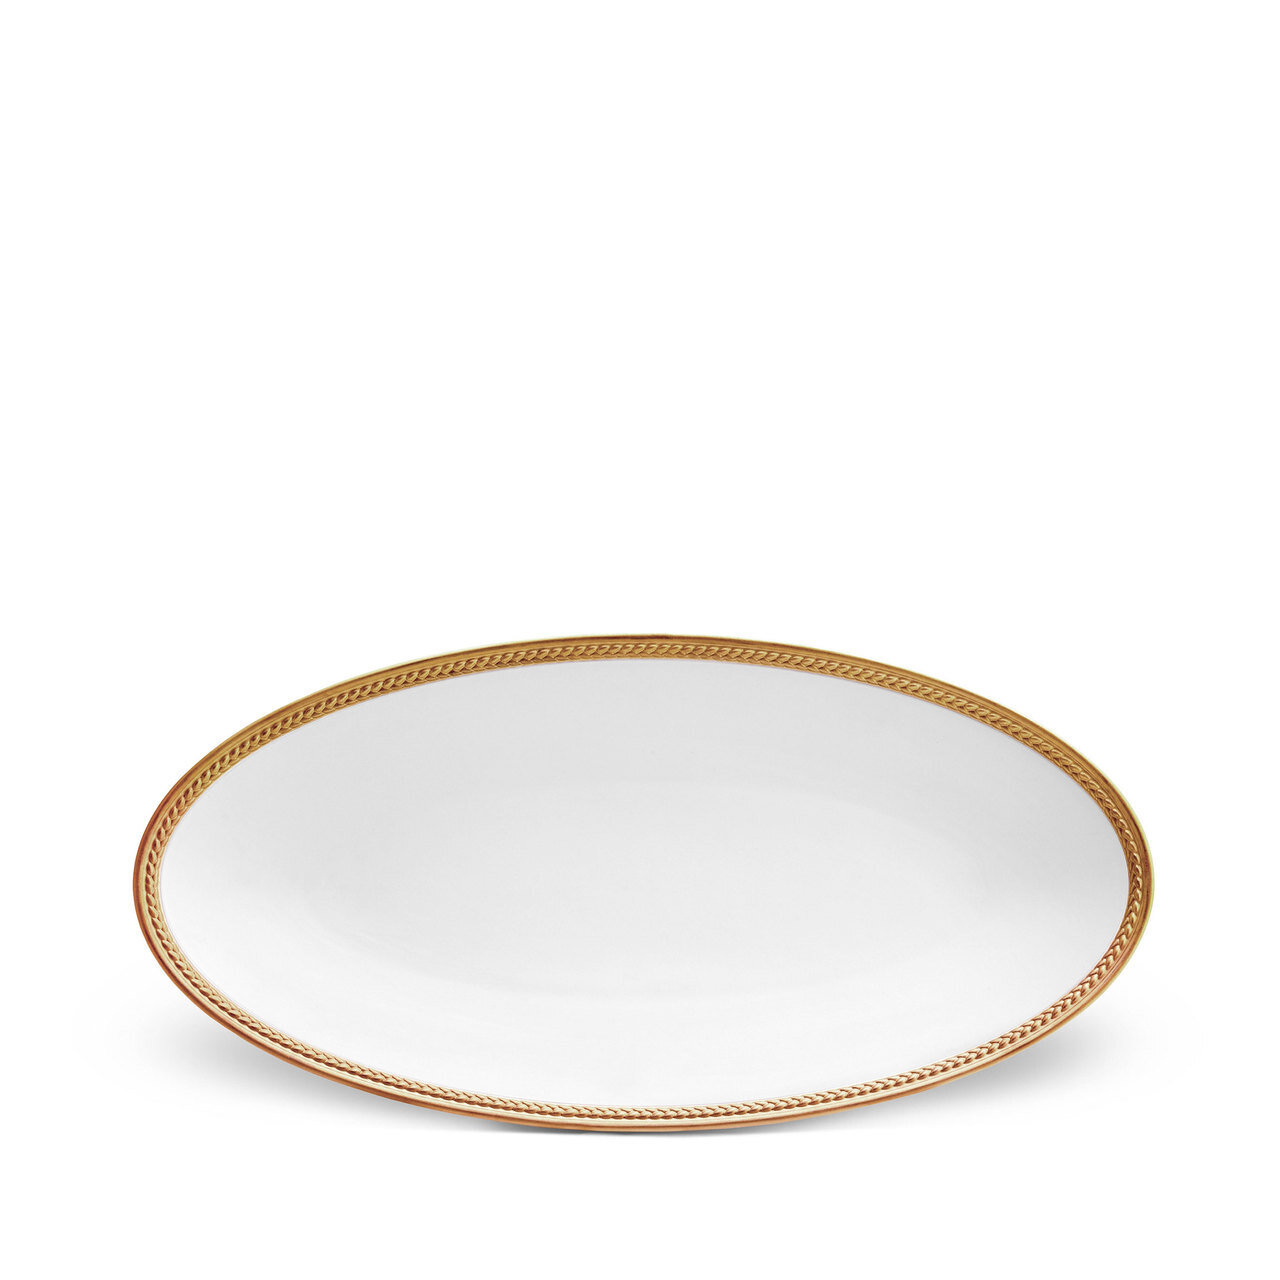 L'Objet Soie Tressee Small Oval Platter Gold